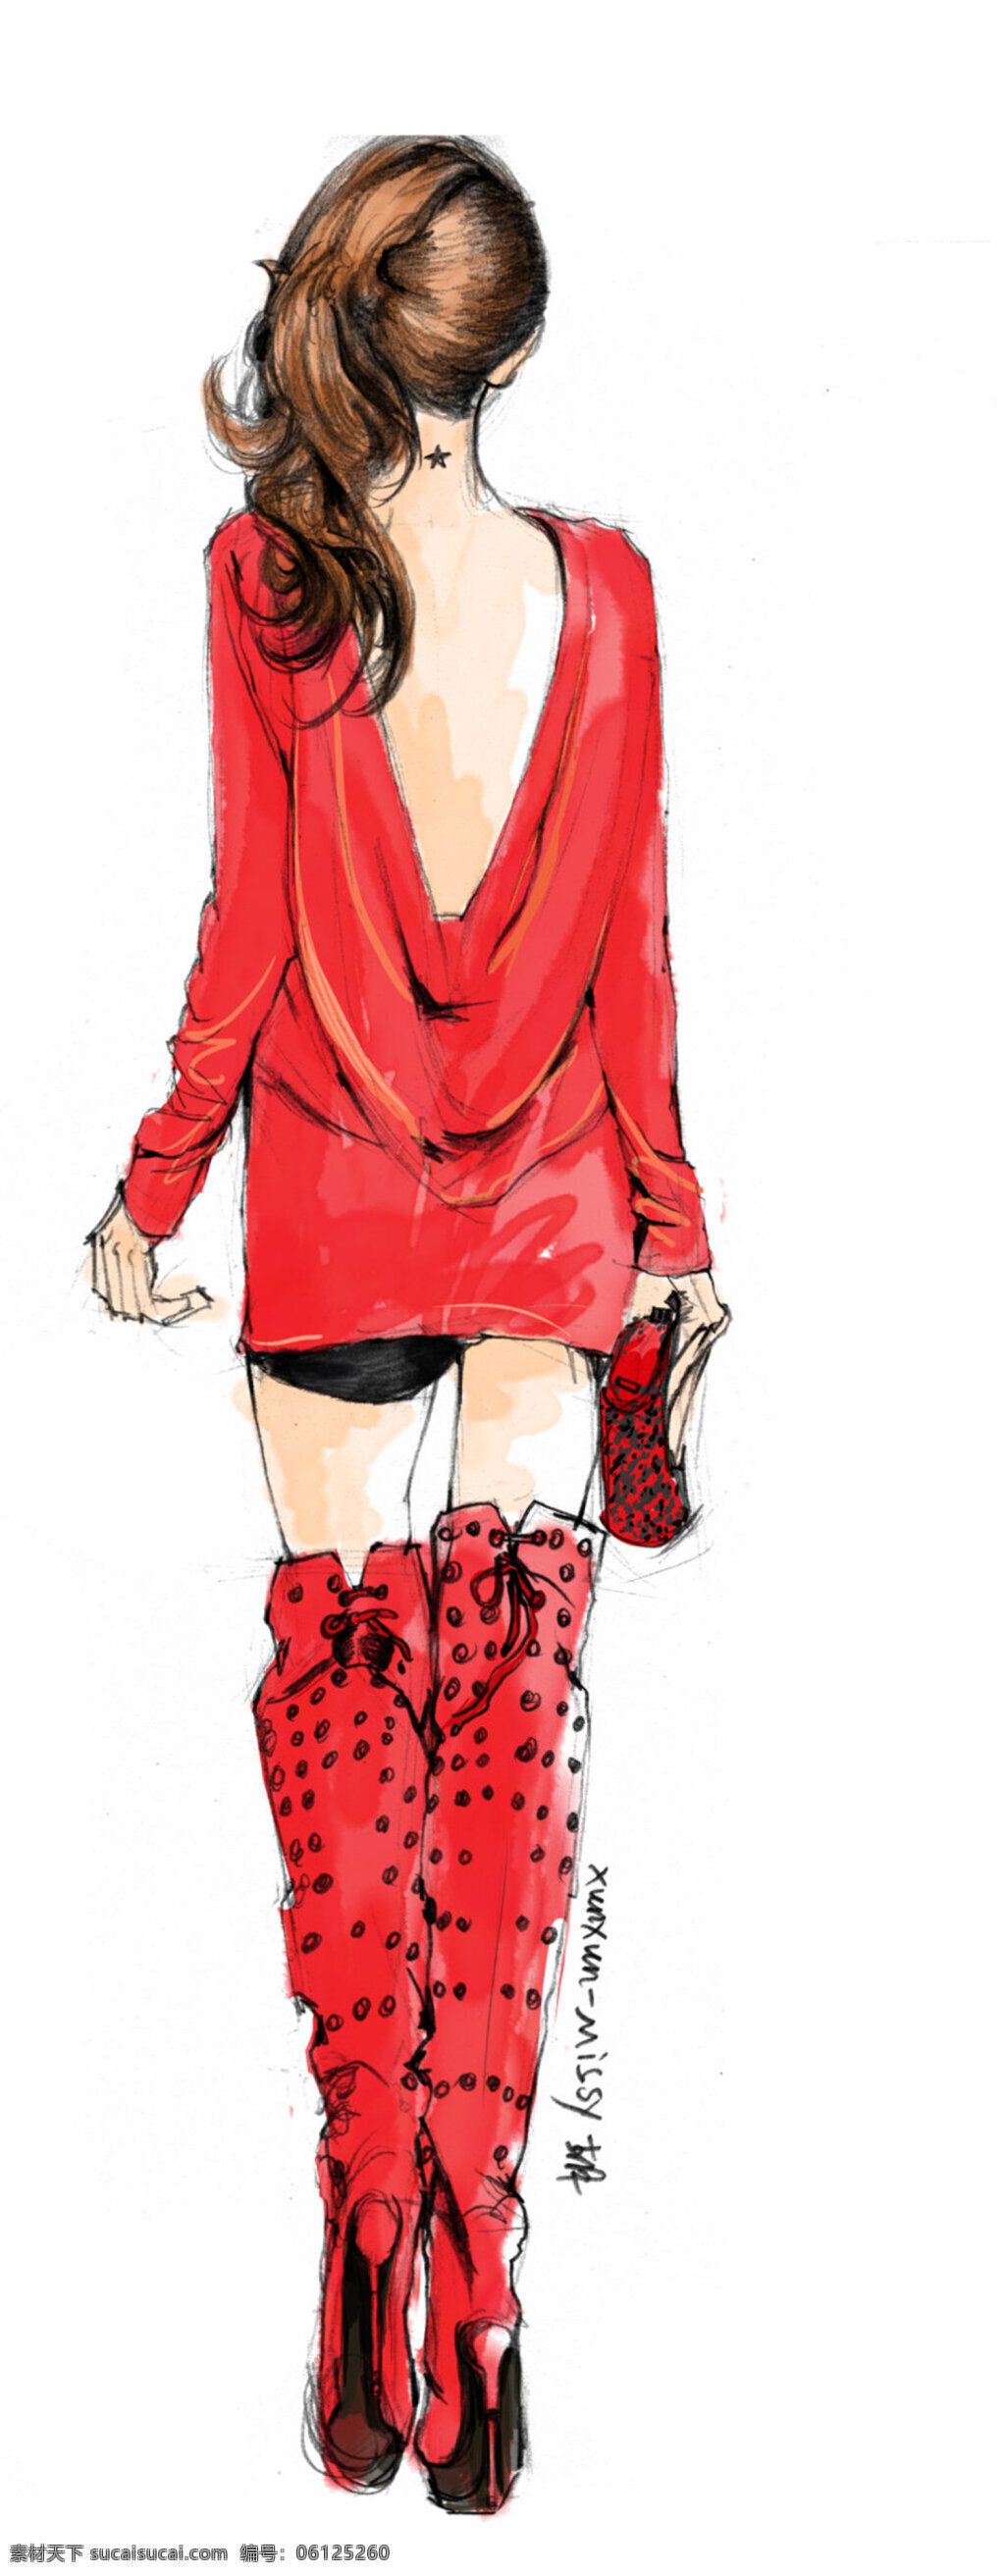 红色 露 背 连衣裙 设计图 服装设计 时尚女装 职业女装 职业装 女装设计 效果图 短裙 衬衫 服装 服装效果图